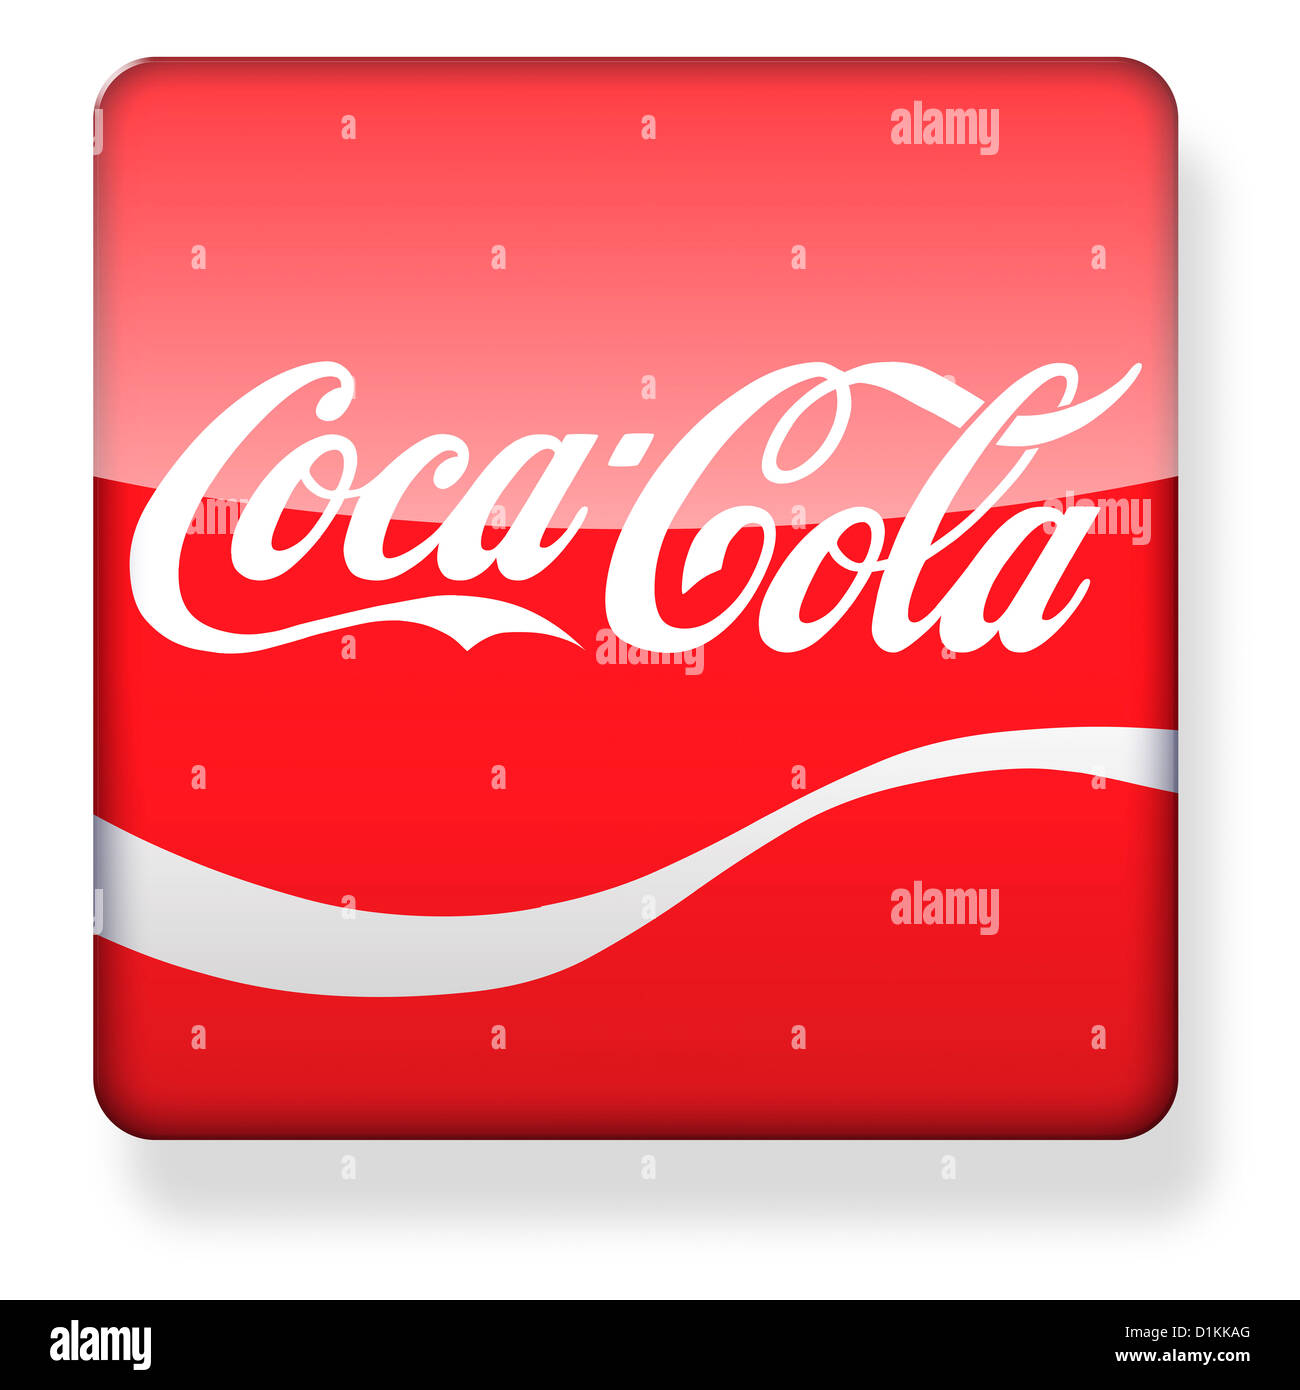 Coca-Cola logo as an app icon Stock Photo